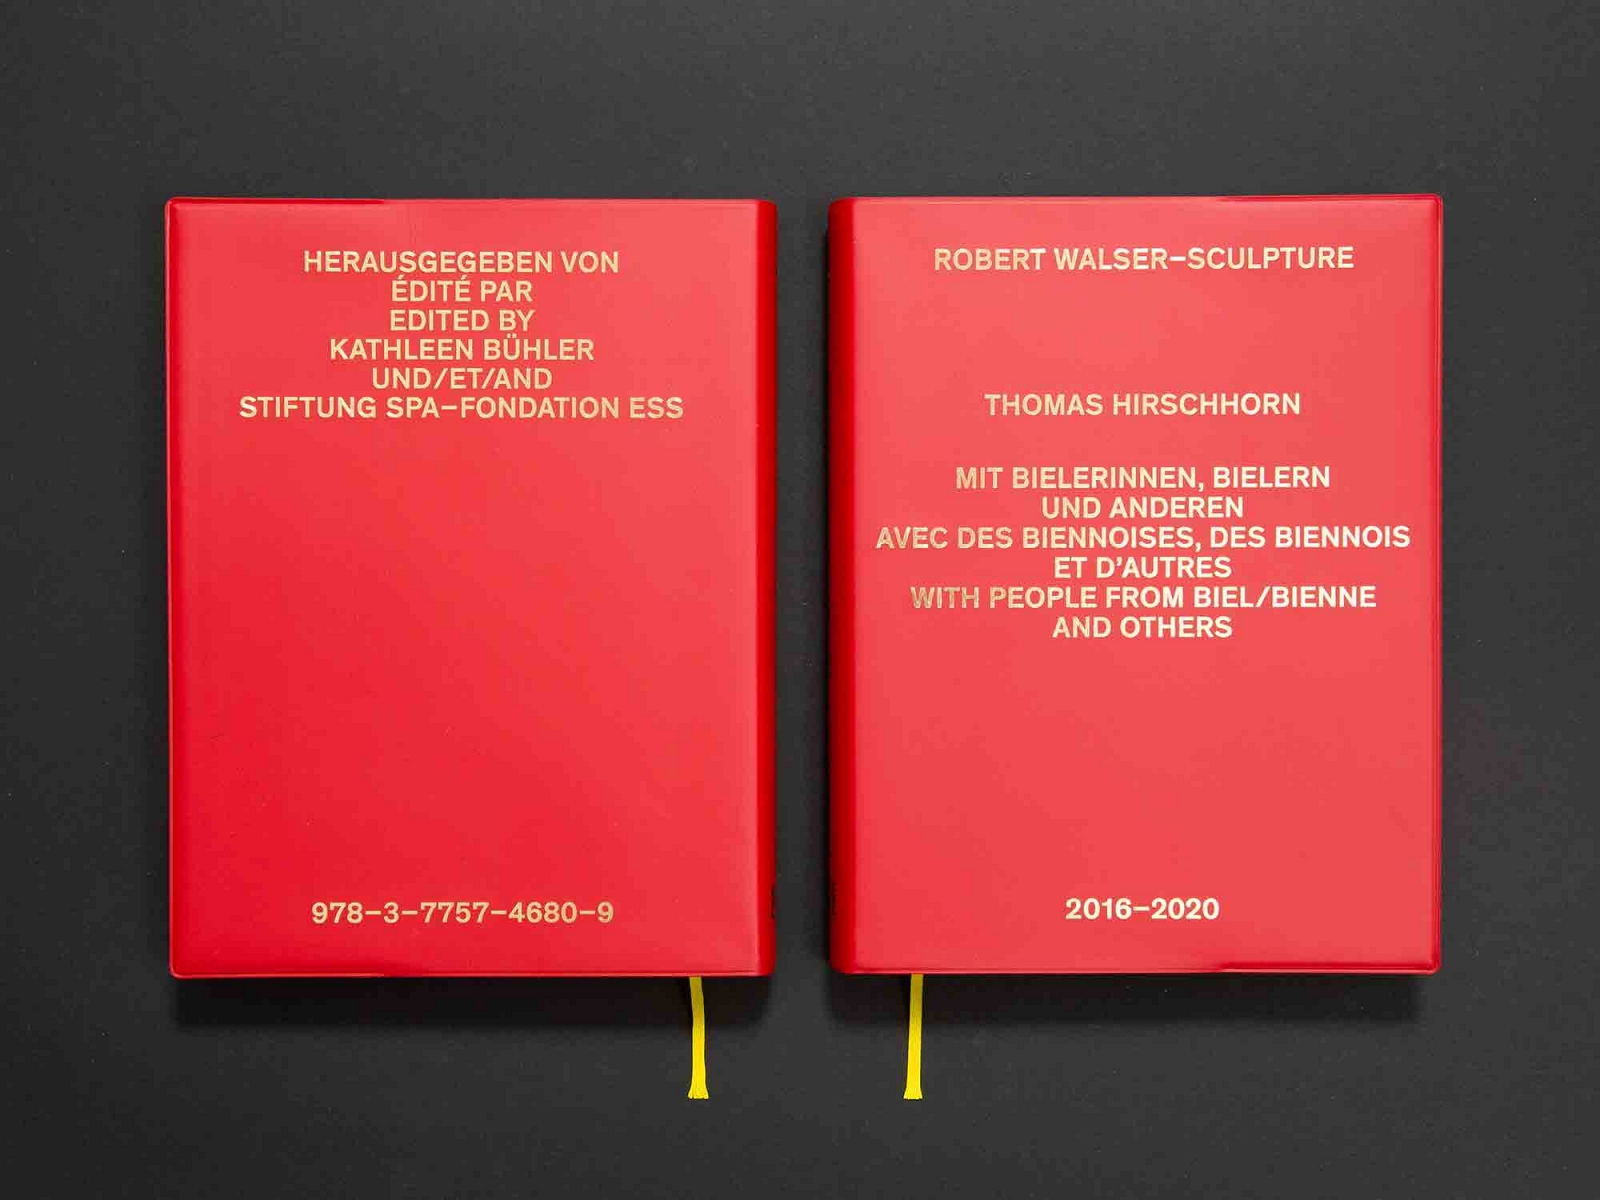 superbüro, Robert Walser-Sculpture, Thomas Hirschhorn, Biel/Bienne